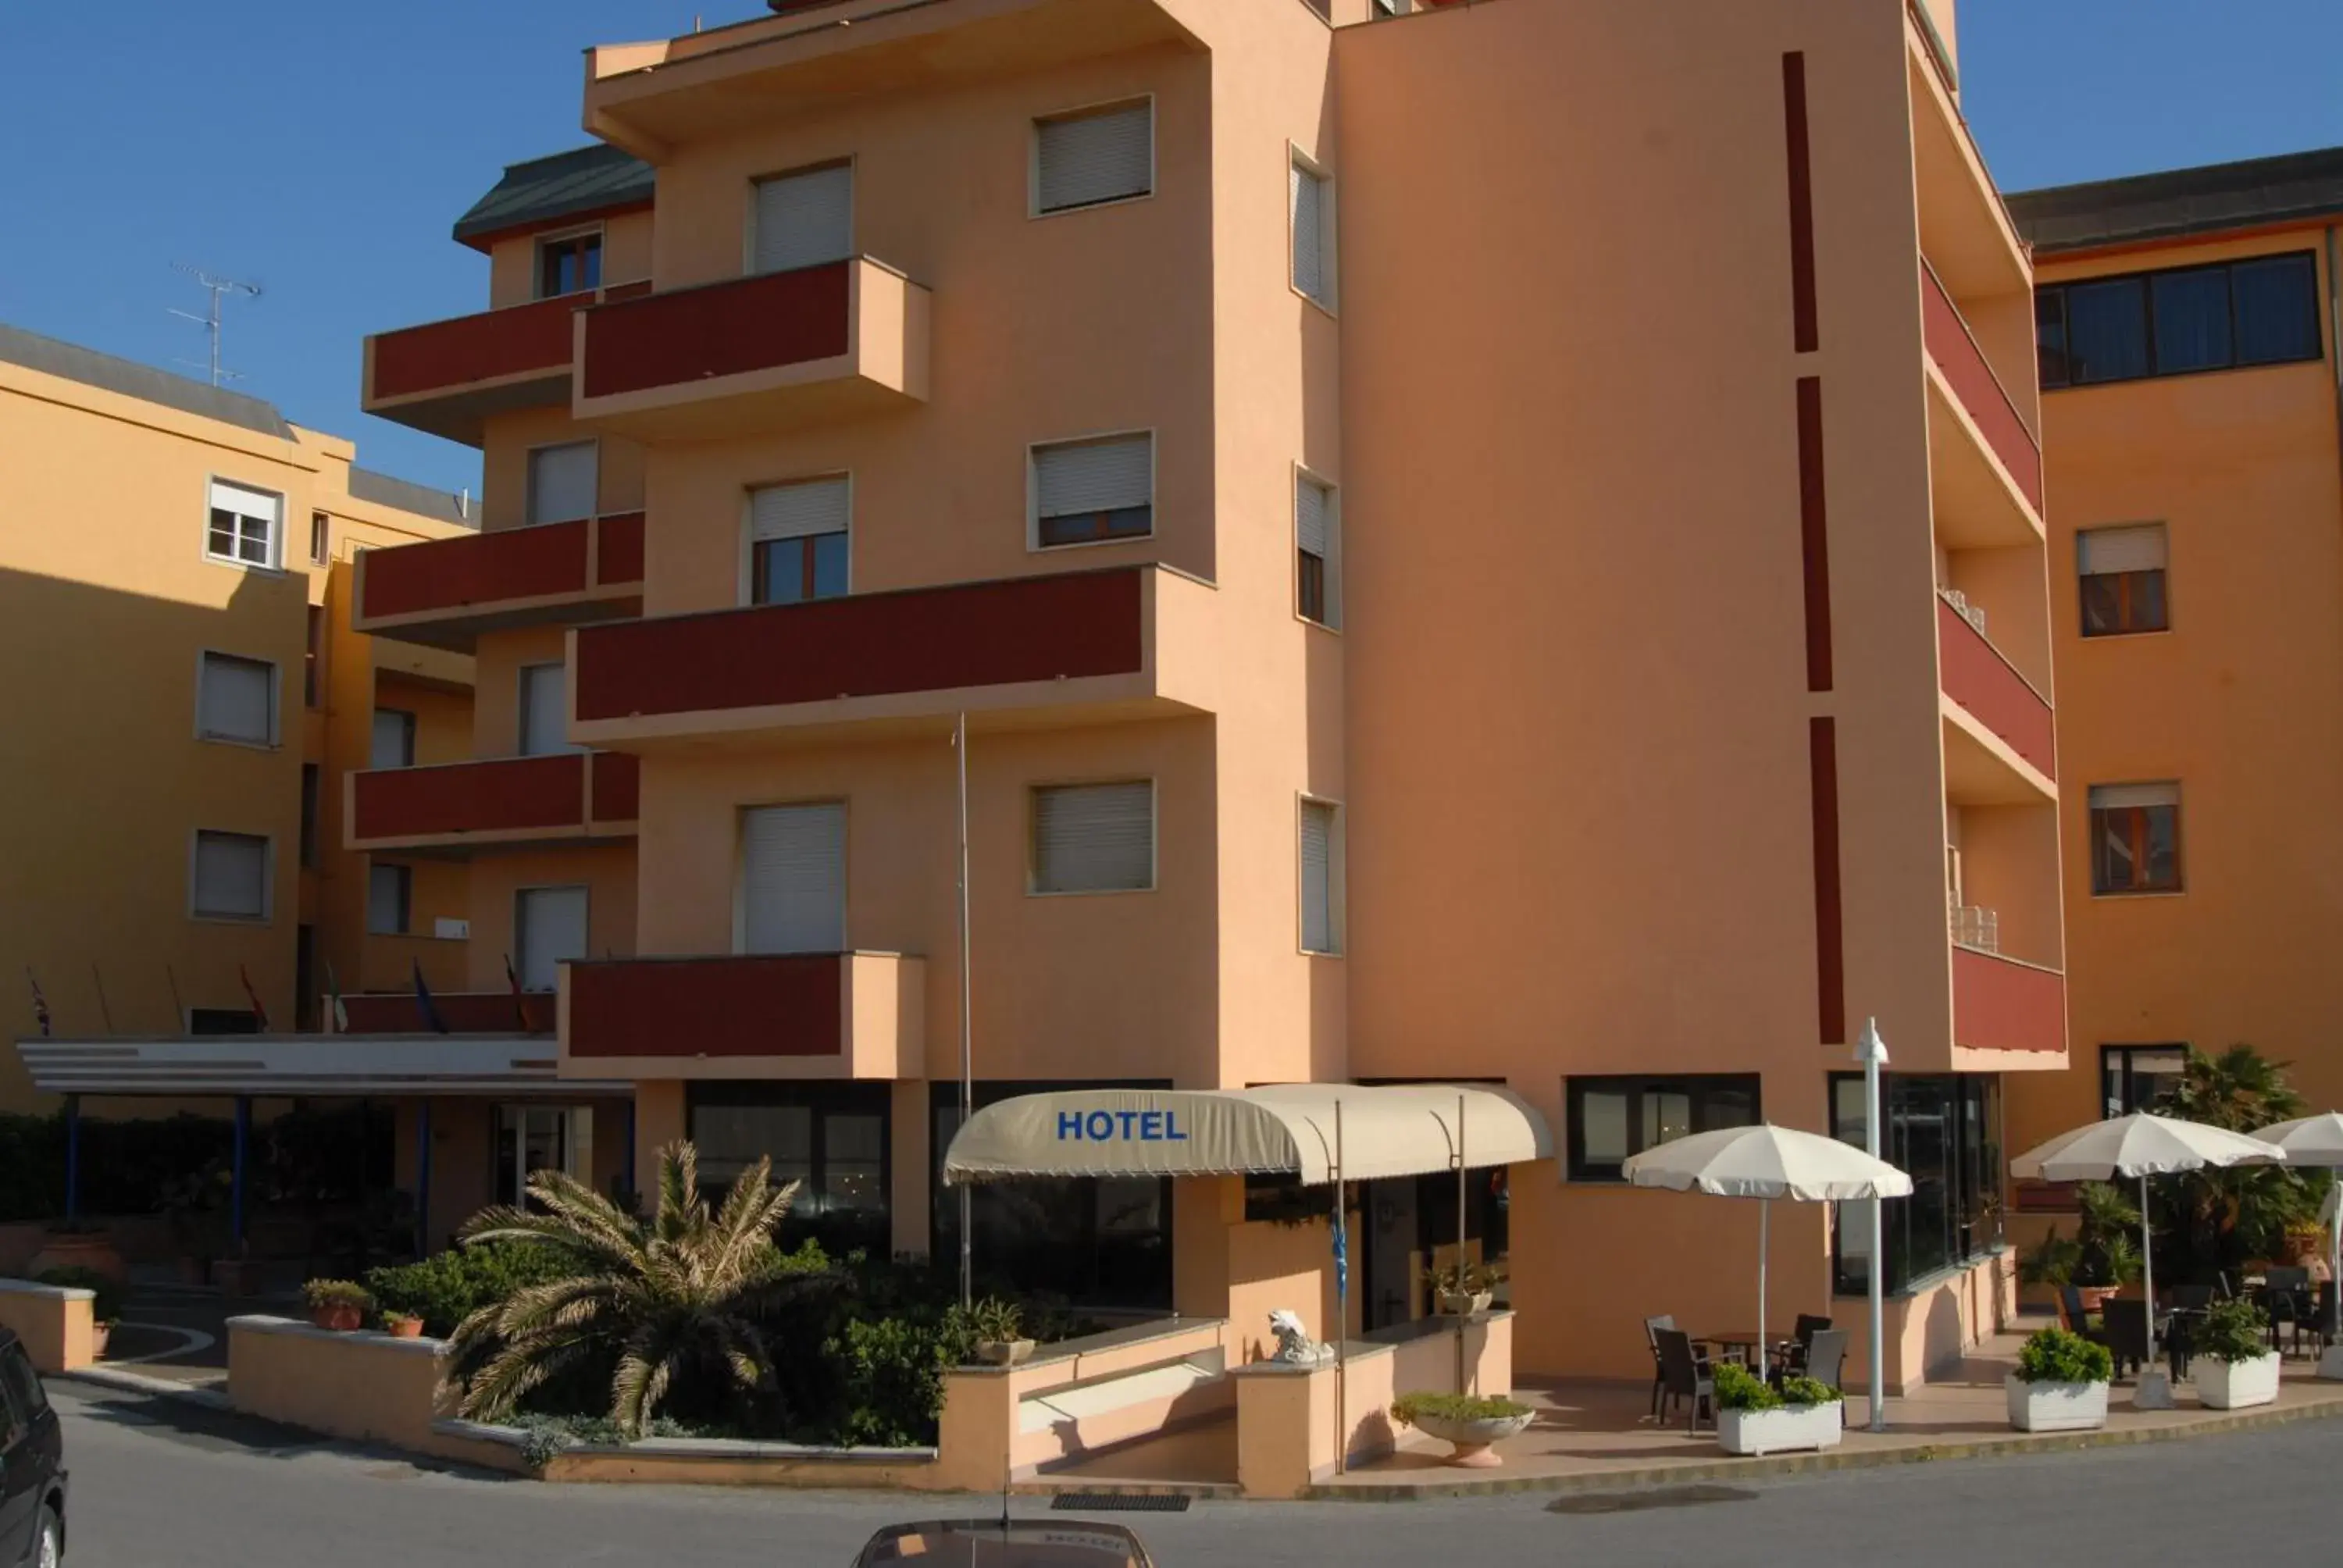 On site, Property Building in Hotel il Delfino